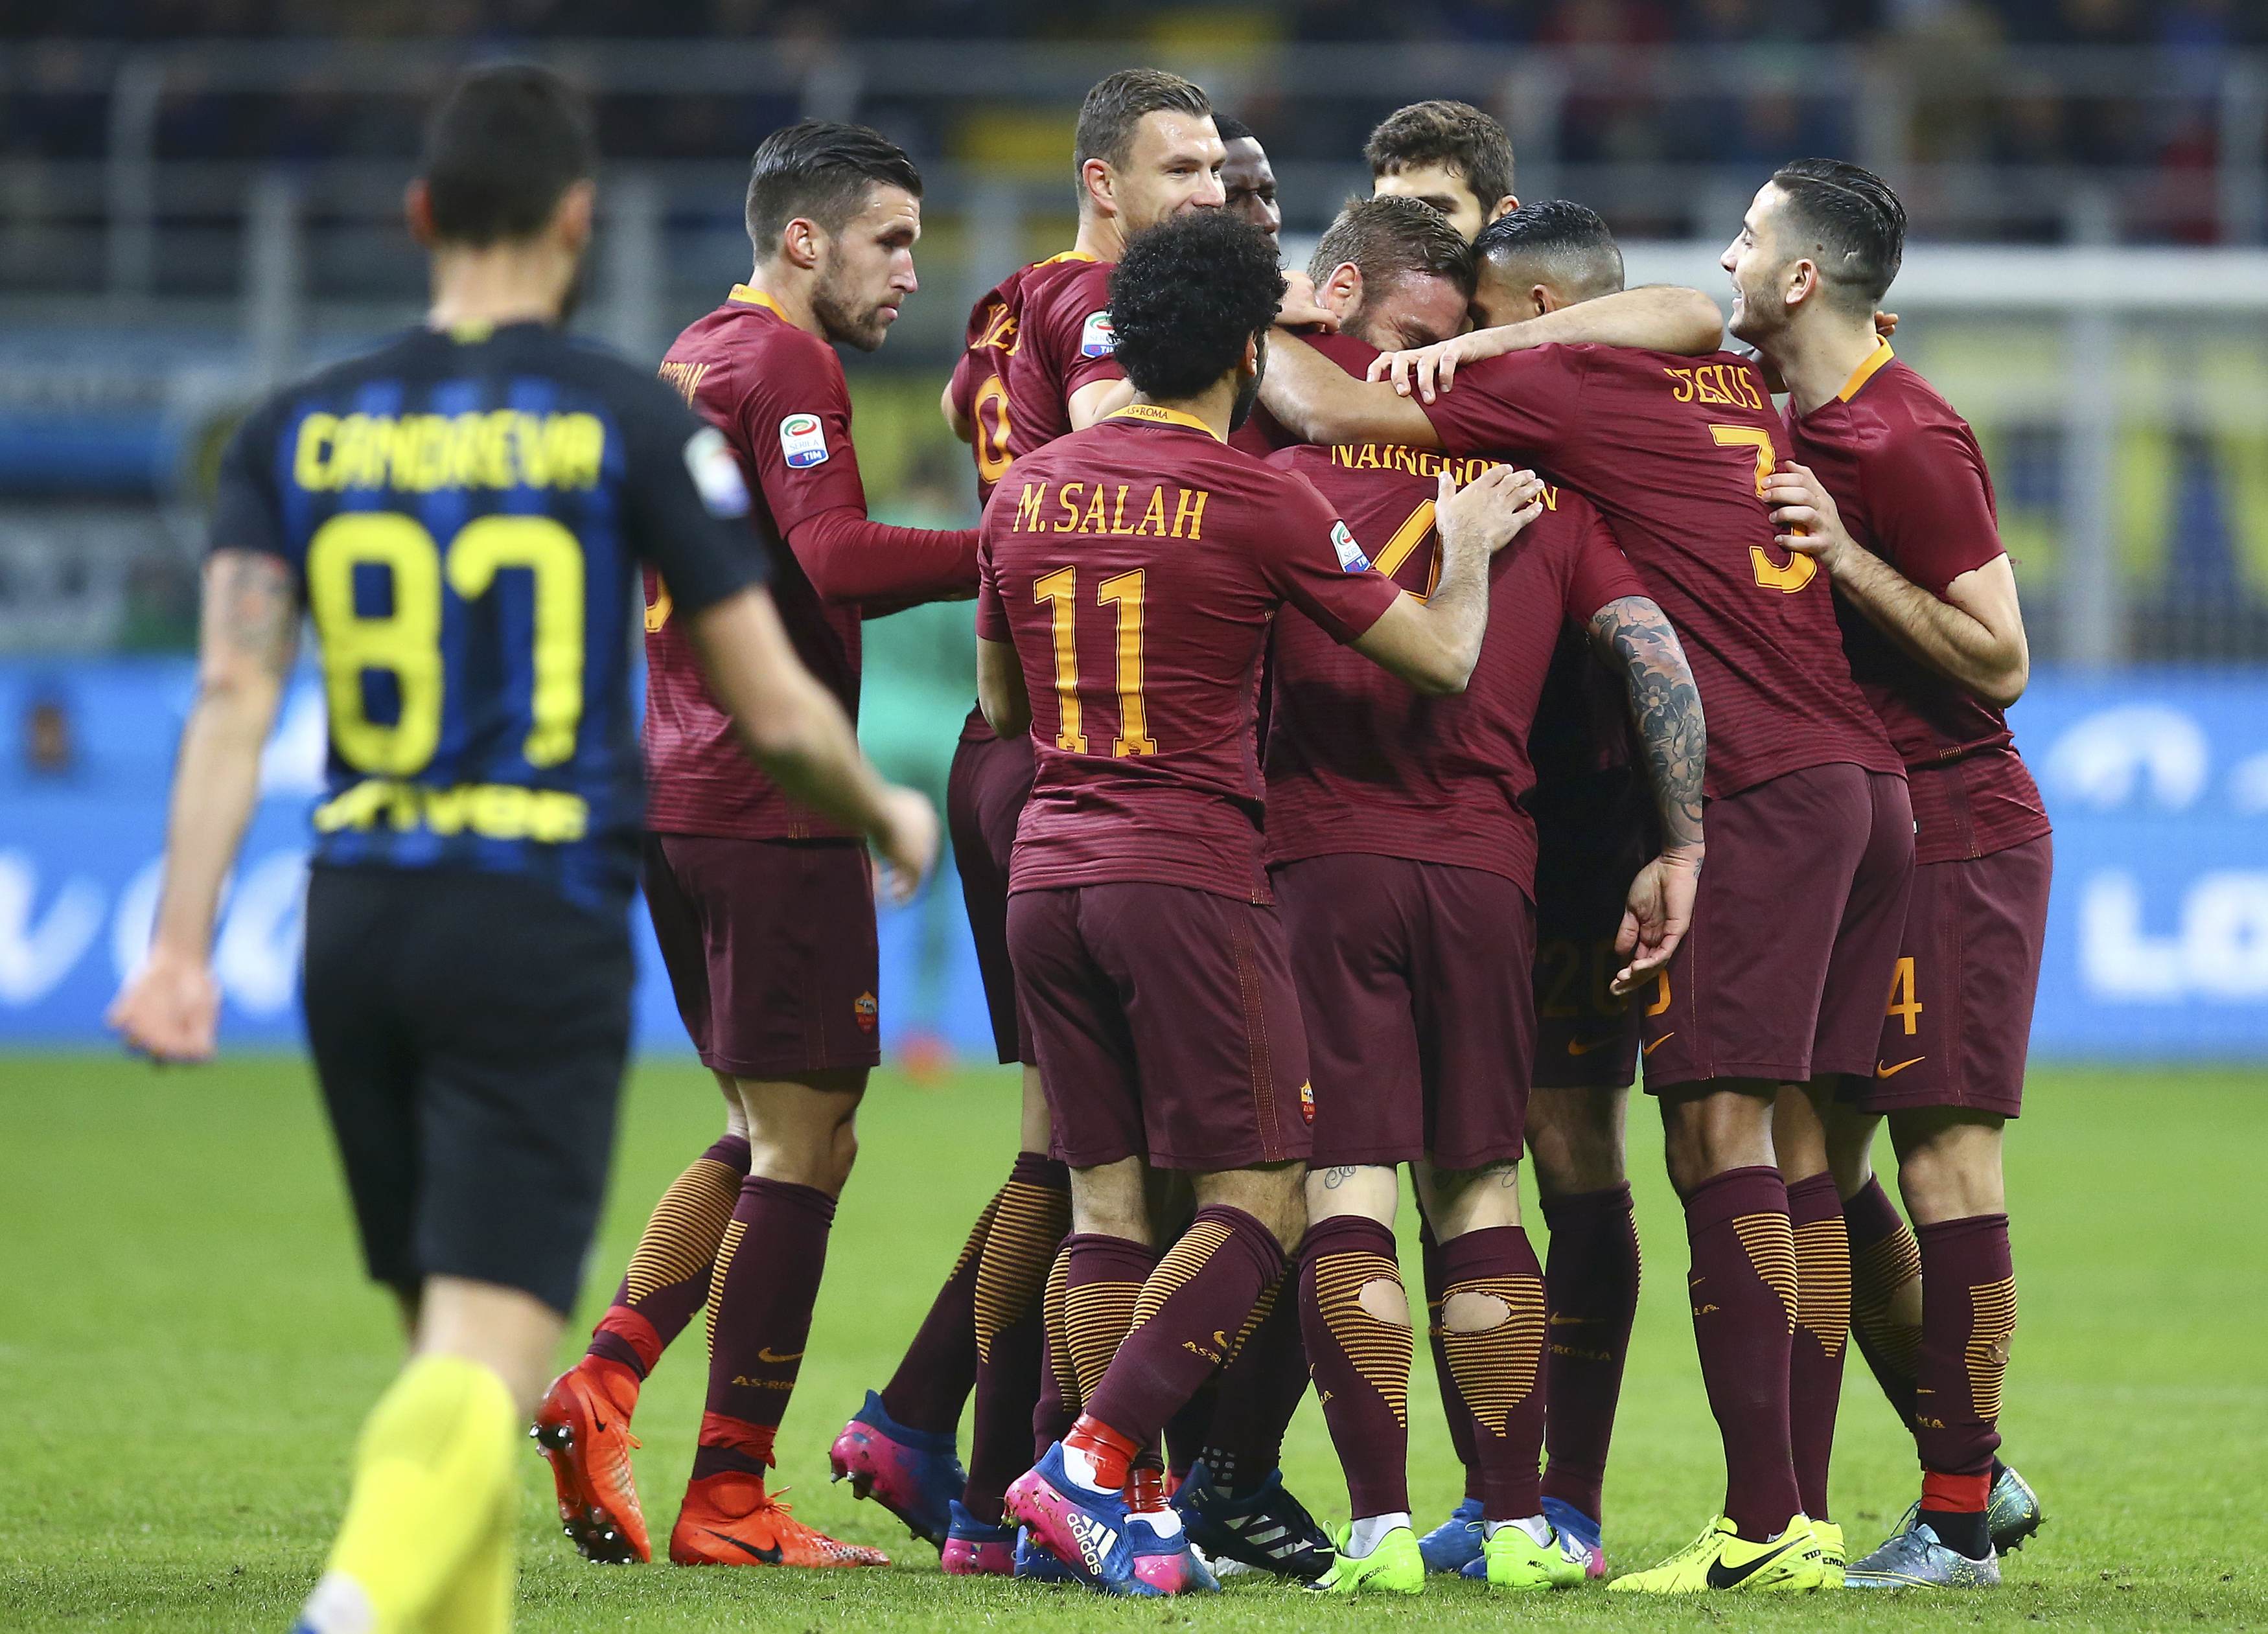 Los jugadores de la Roma renuncian a cuatro meses de salario